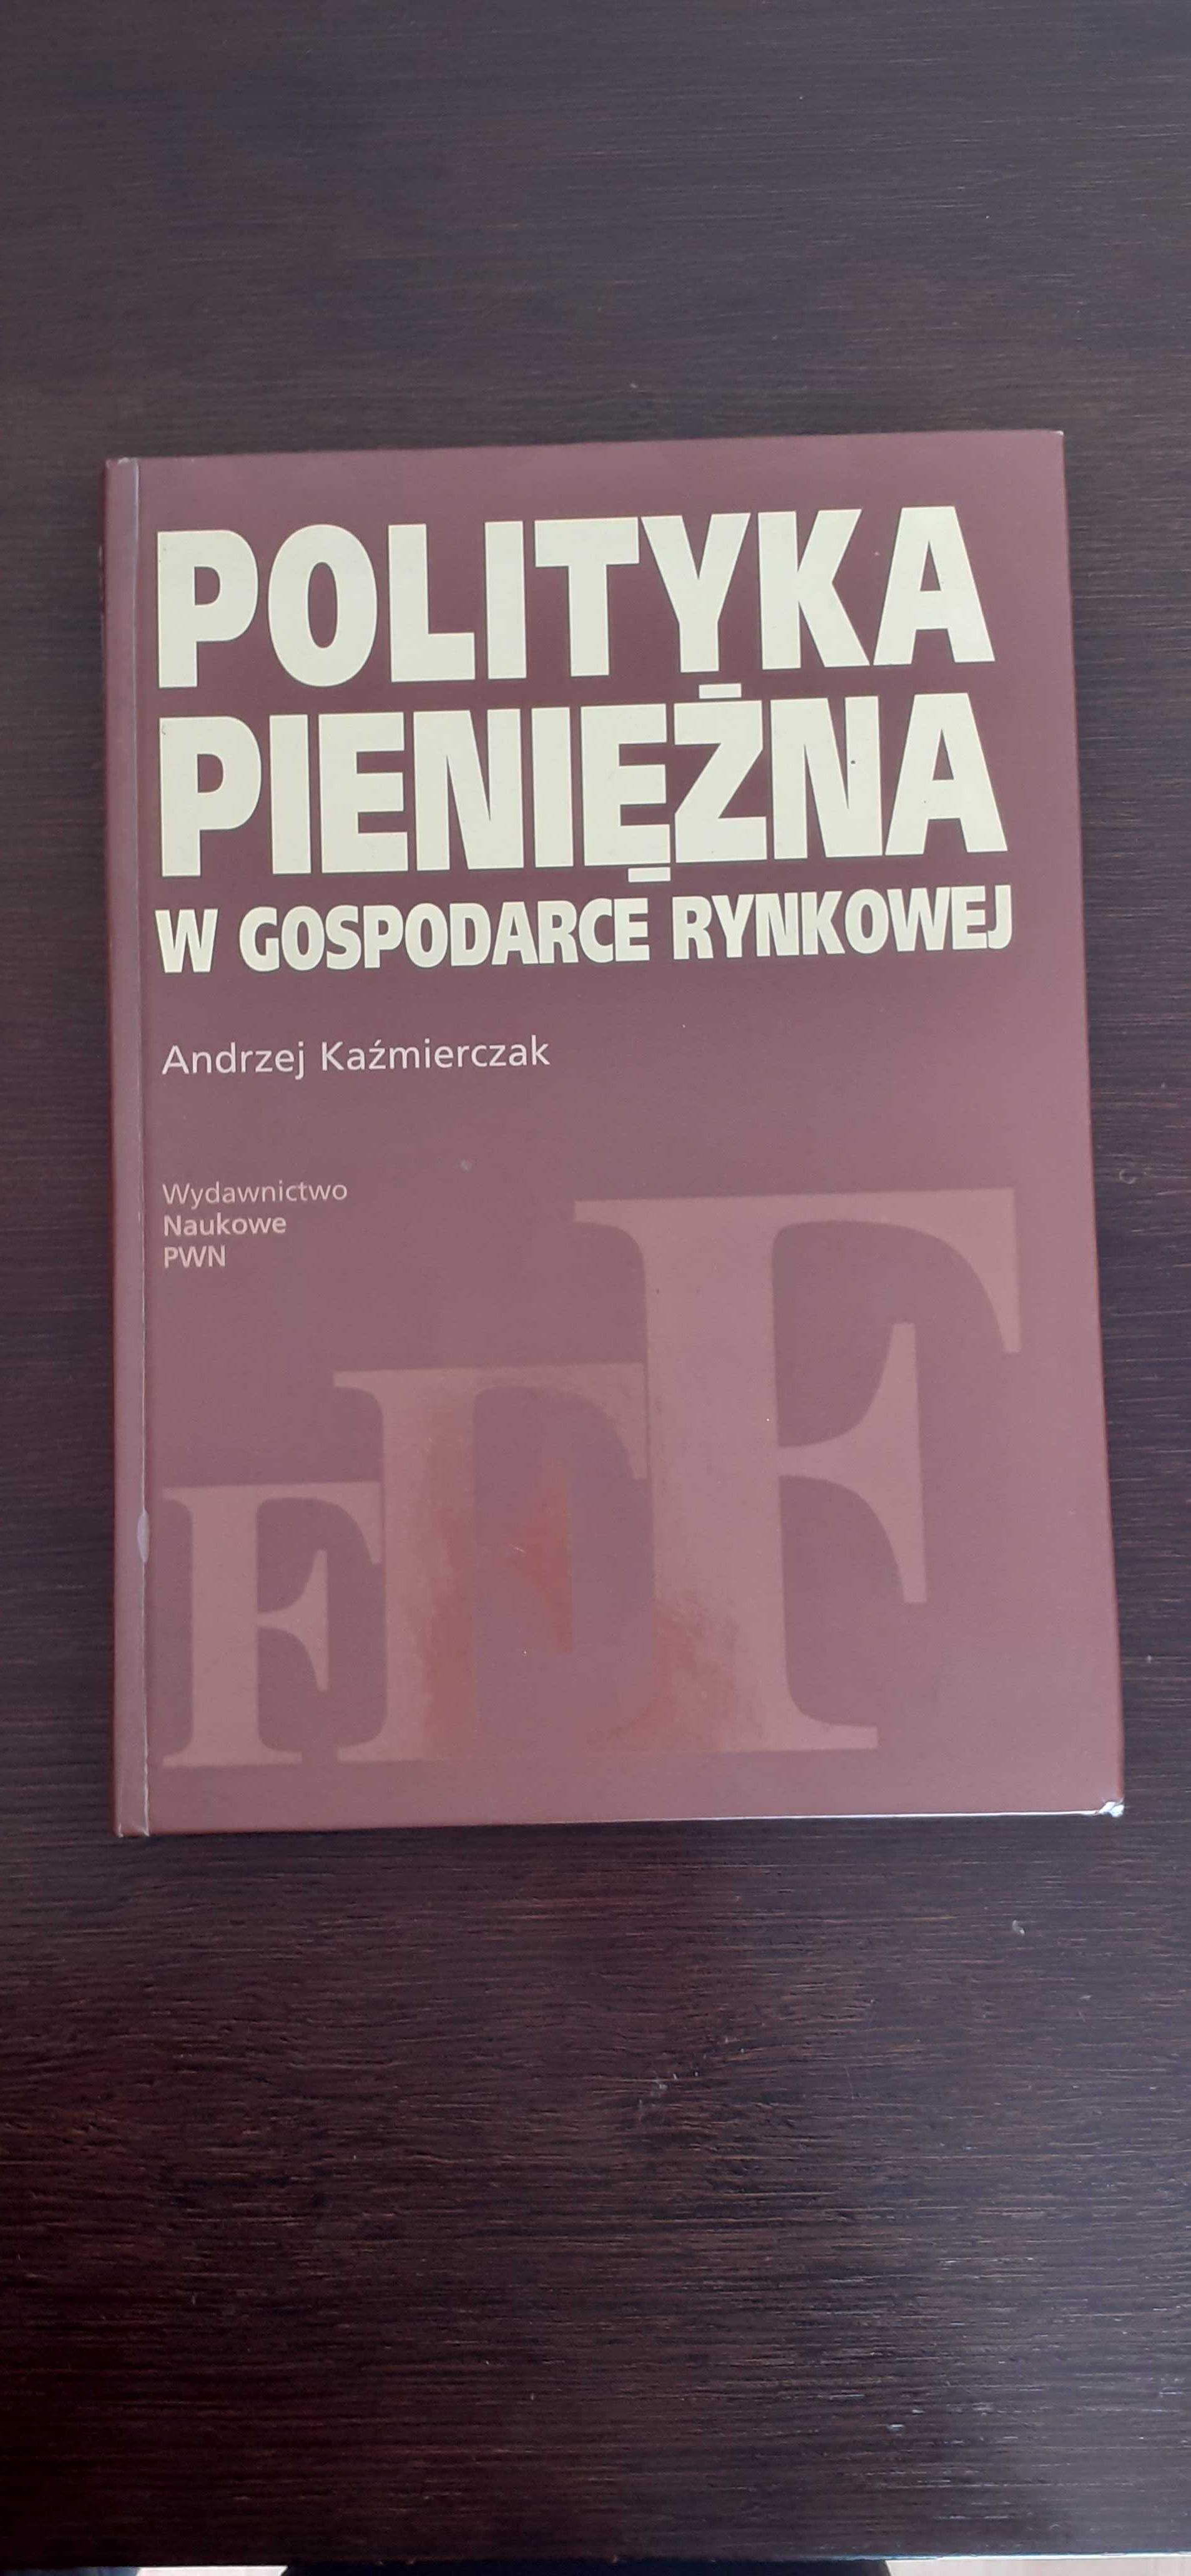 Polityka Pieniężna w gospodarce rynkowej - Andrzej Kaźmierczak